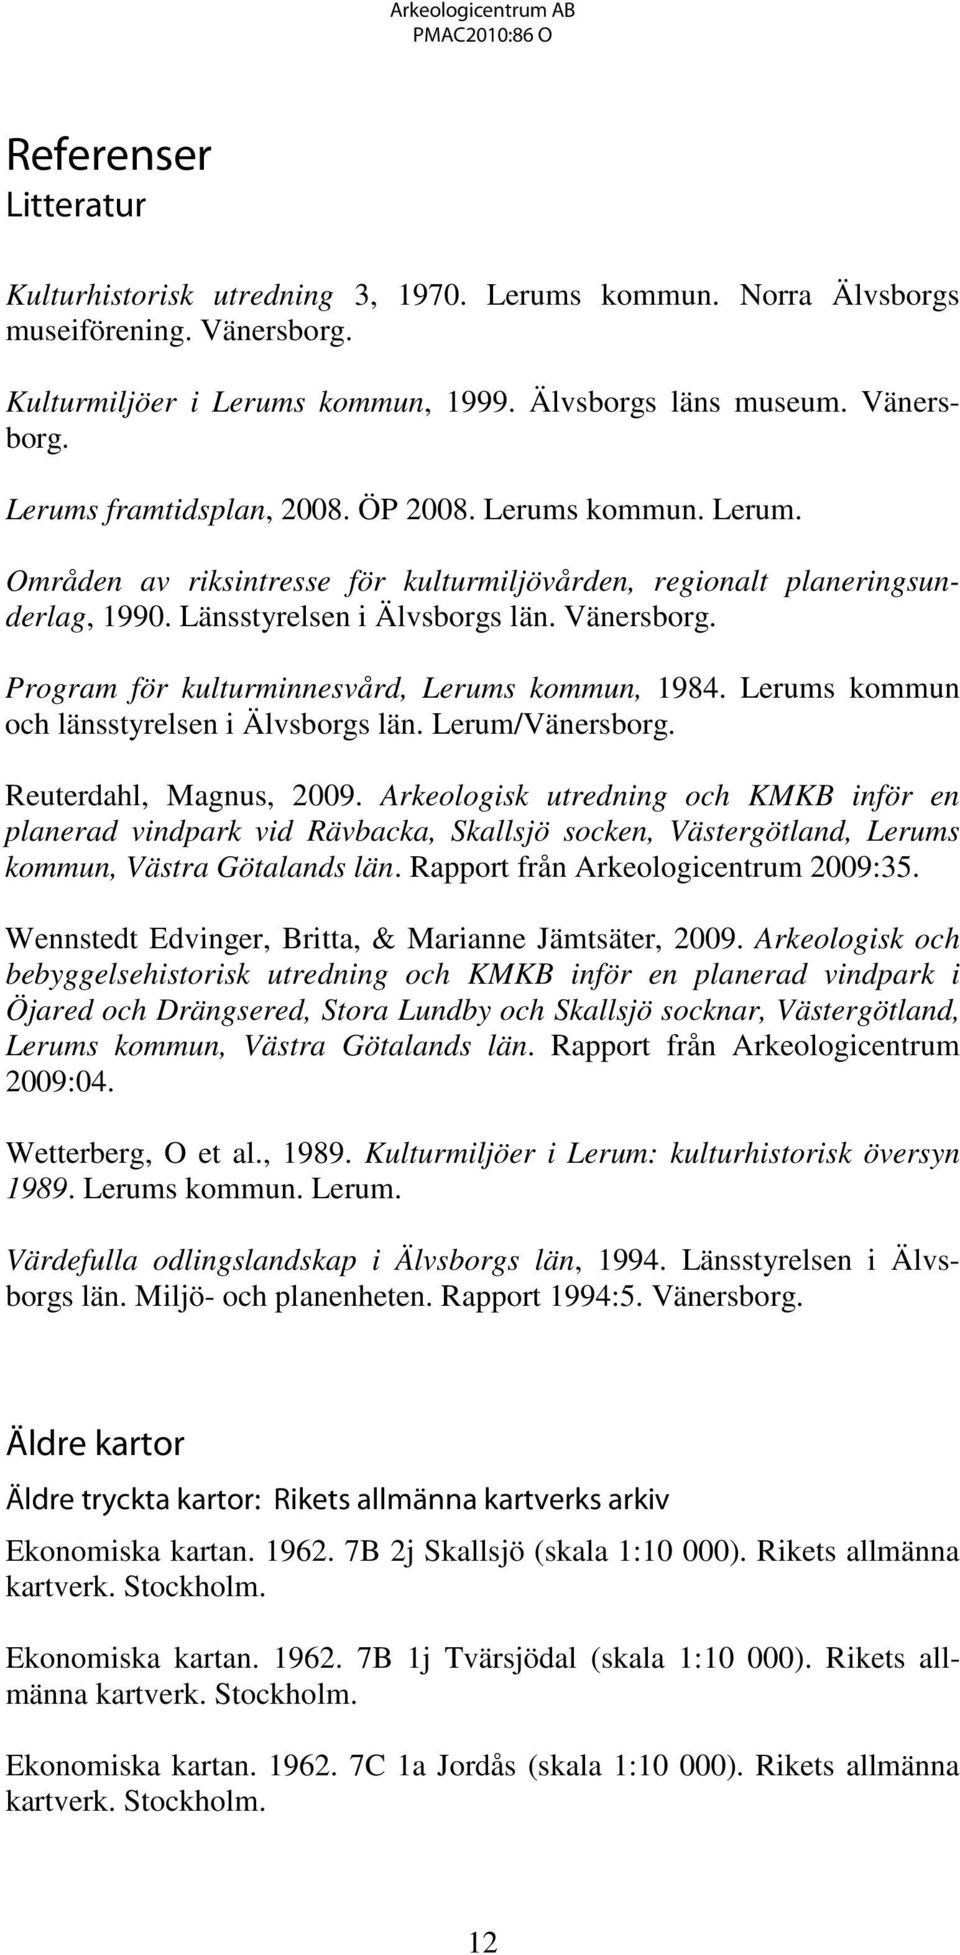 Program för kulturminnesvård, Lerums kommun, 1984. Lerums kommun och länsstyrelsen i Älvsborgs län. Lerum/Vänersborg. Reuterdahl, Magnus, 2009.